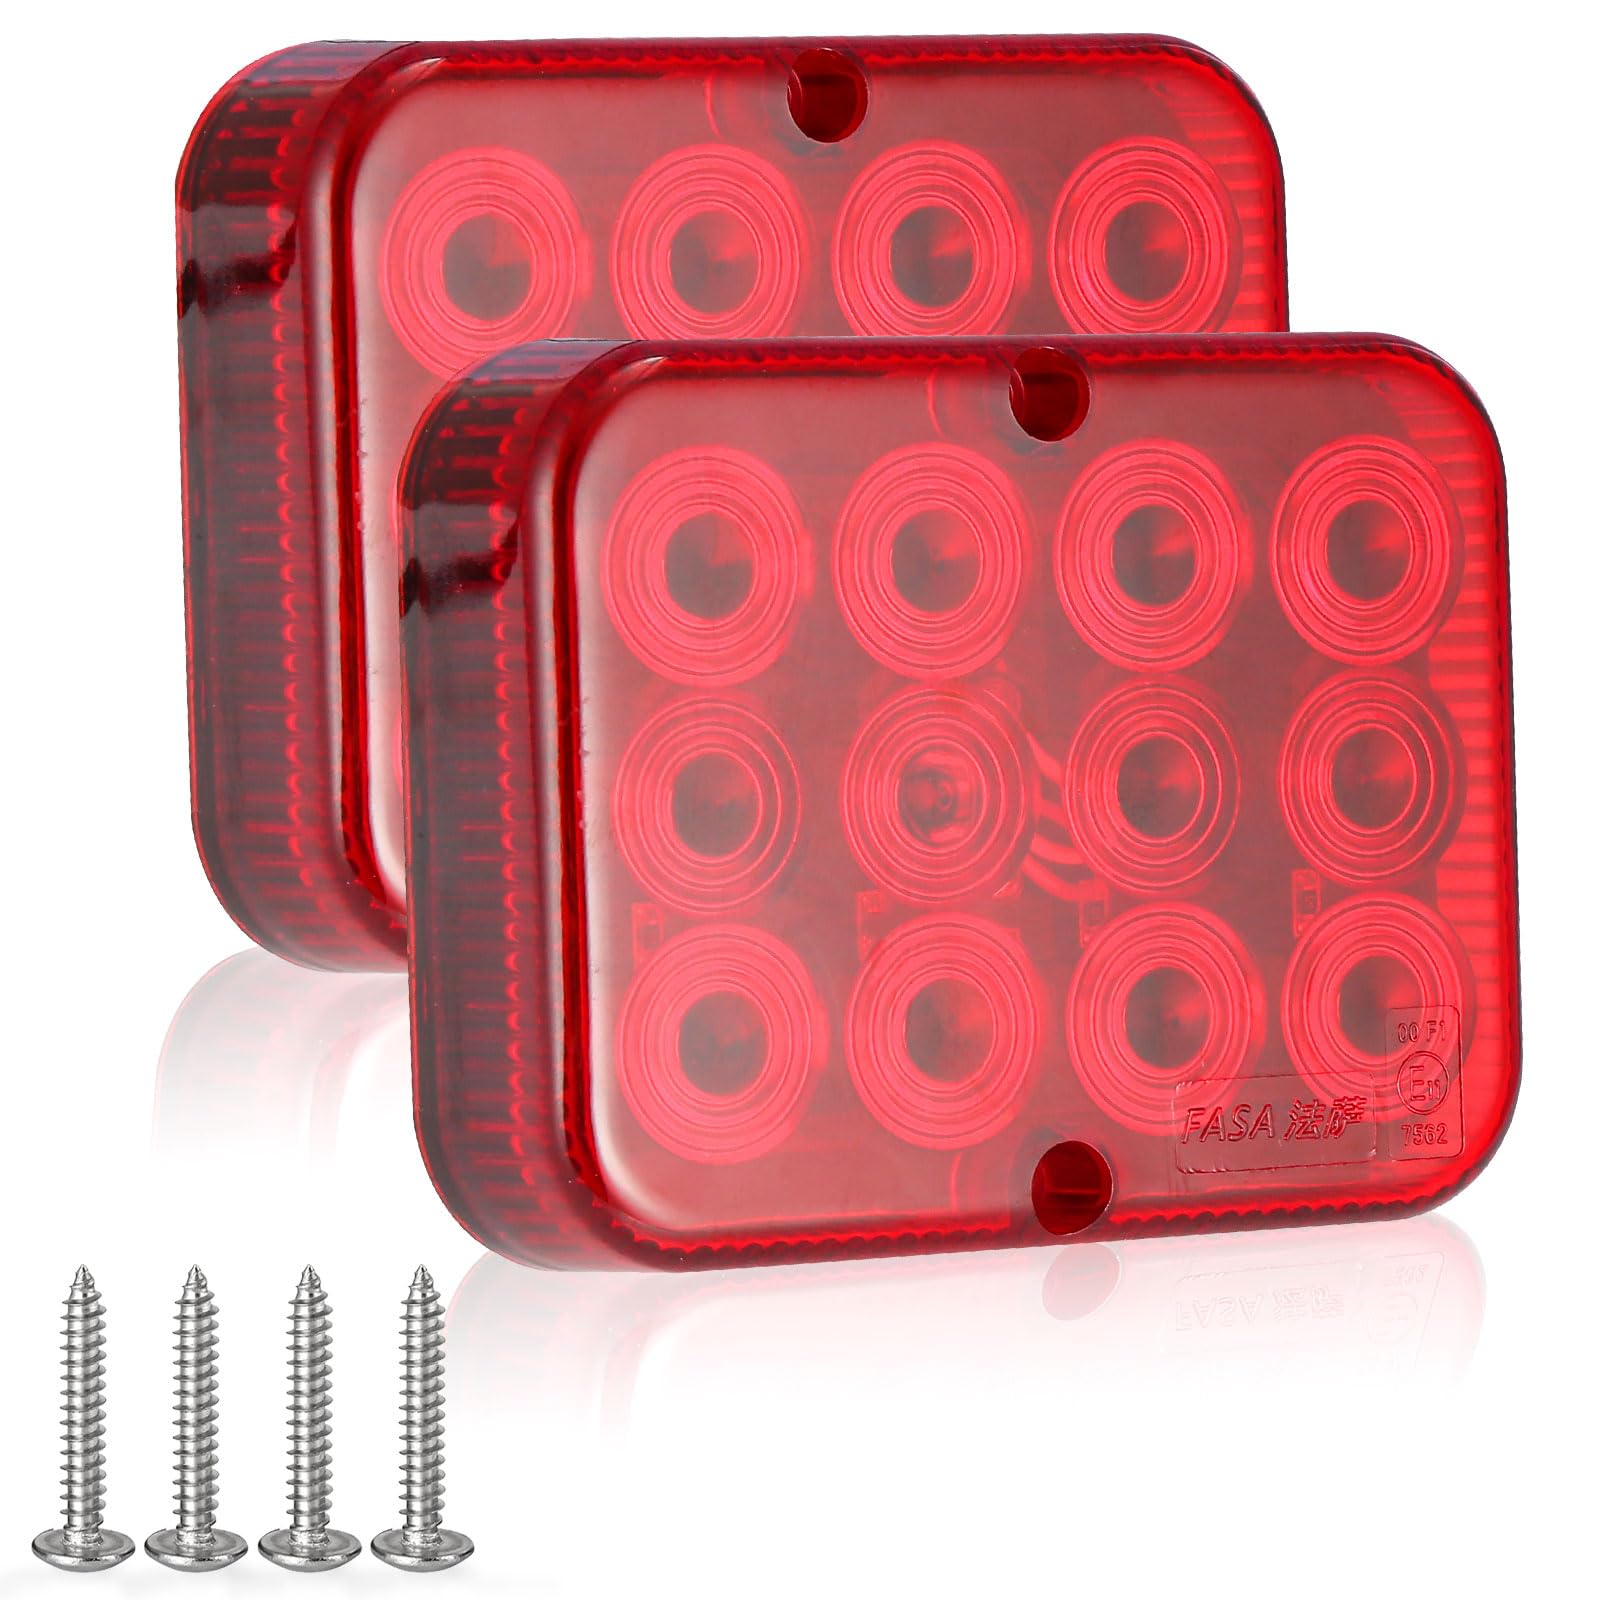 SPARKMOTO 2 x Nebelschlussleuchte LED 12v mit zulassung,LED Nebelscheinwerfer Anhänger Rot Wasserdicht für LKW Traktor,Rot Nebelschlussleuchten LED anhänger, Inklusive Montageschrauben,12 LEDs,IP67 von SPARKMOTO